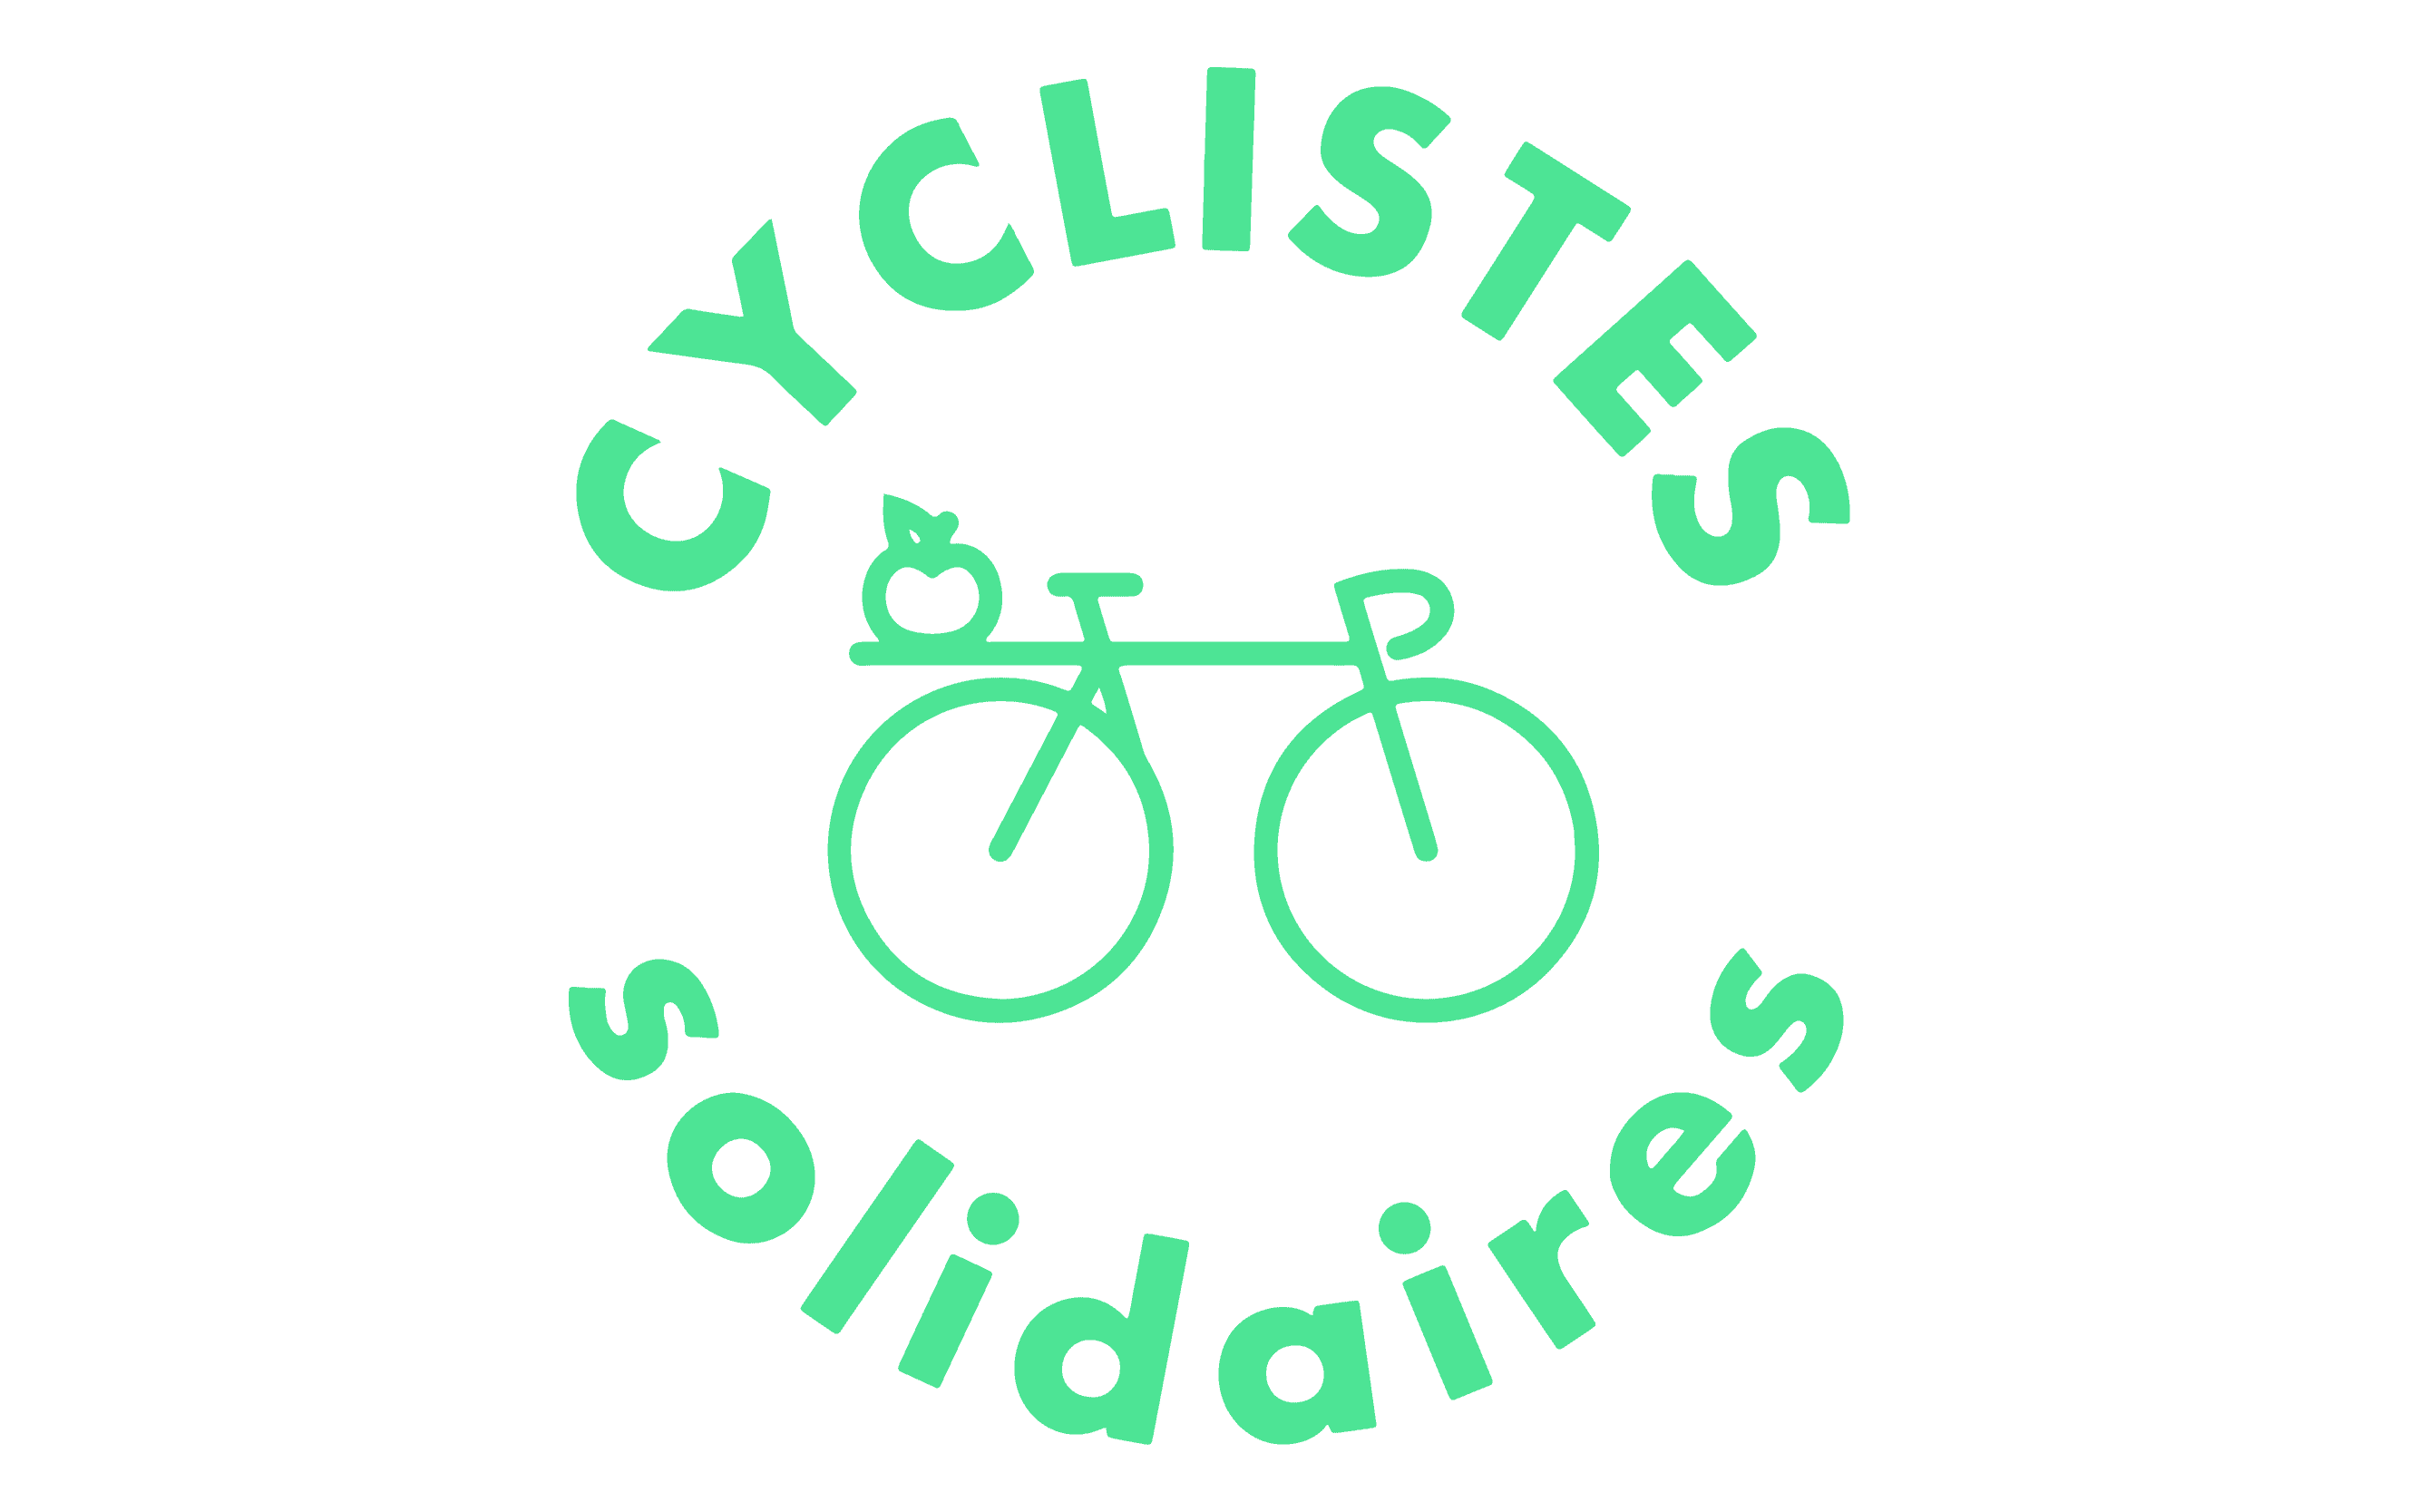 cyclistes solidaires_Plan de travail 1